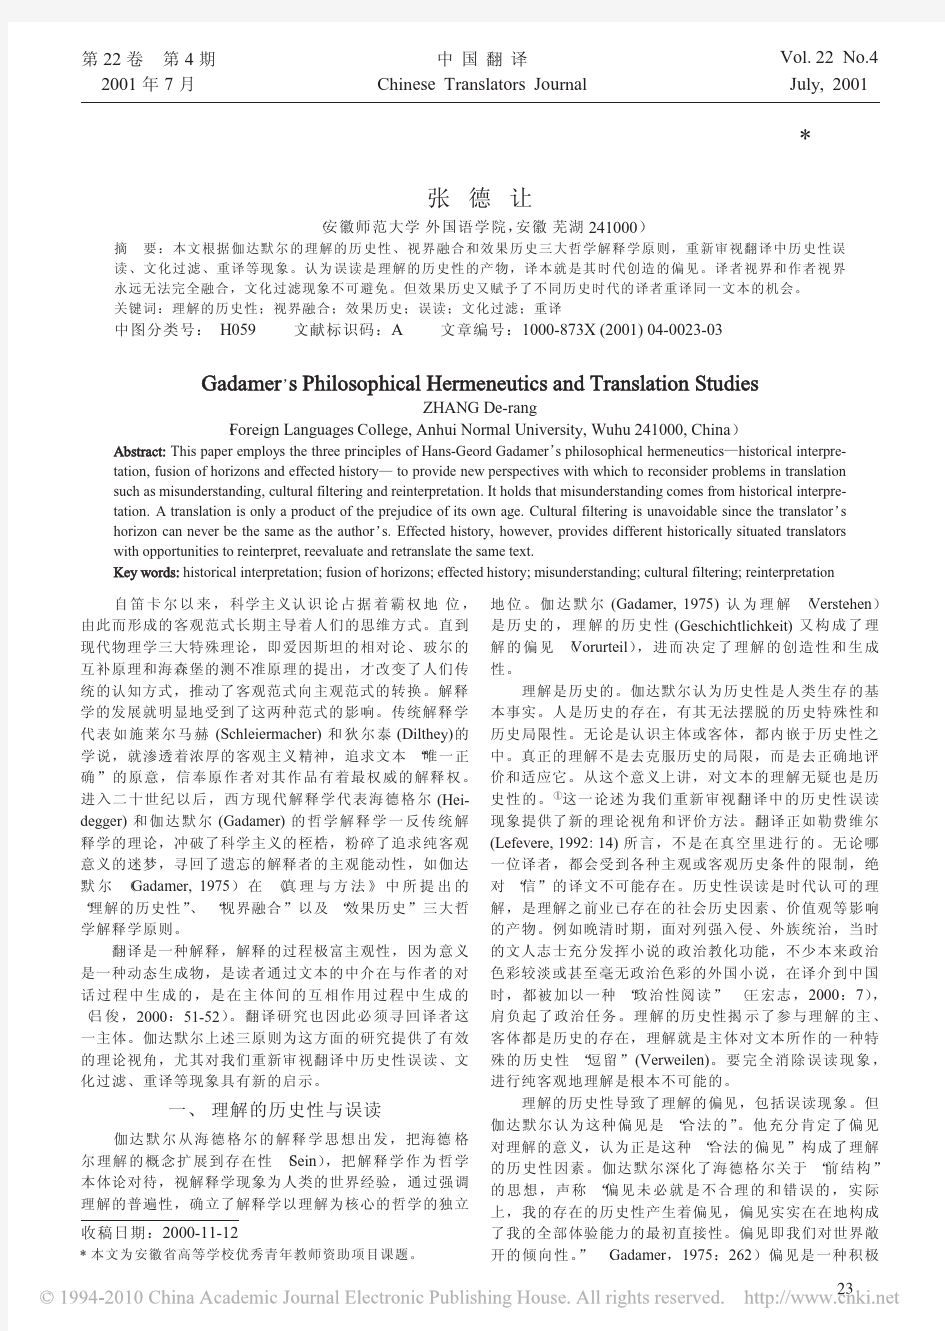 伽达默尔哲学解释学与翻译研究